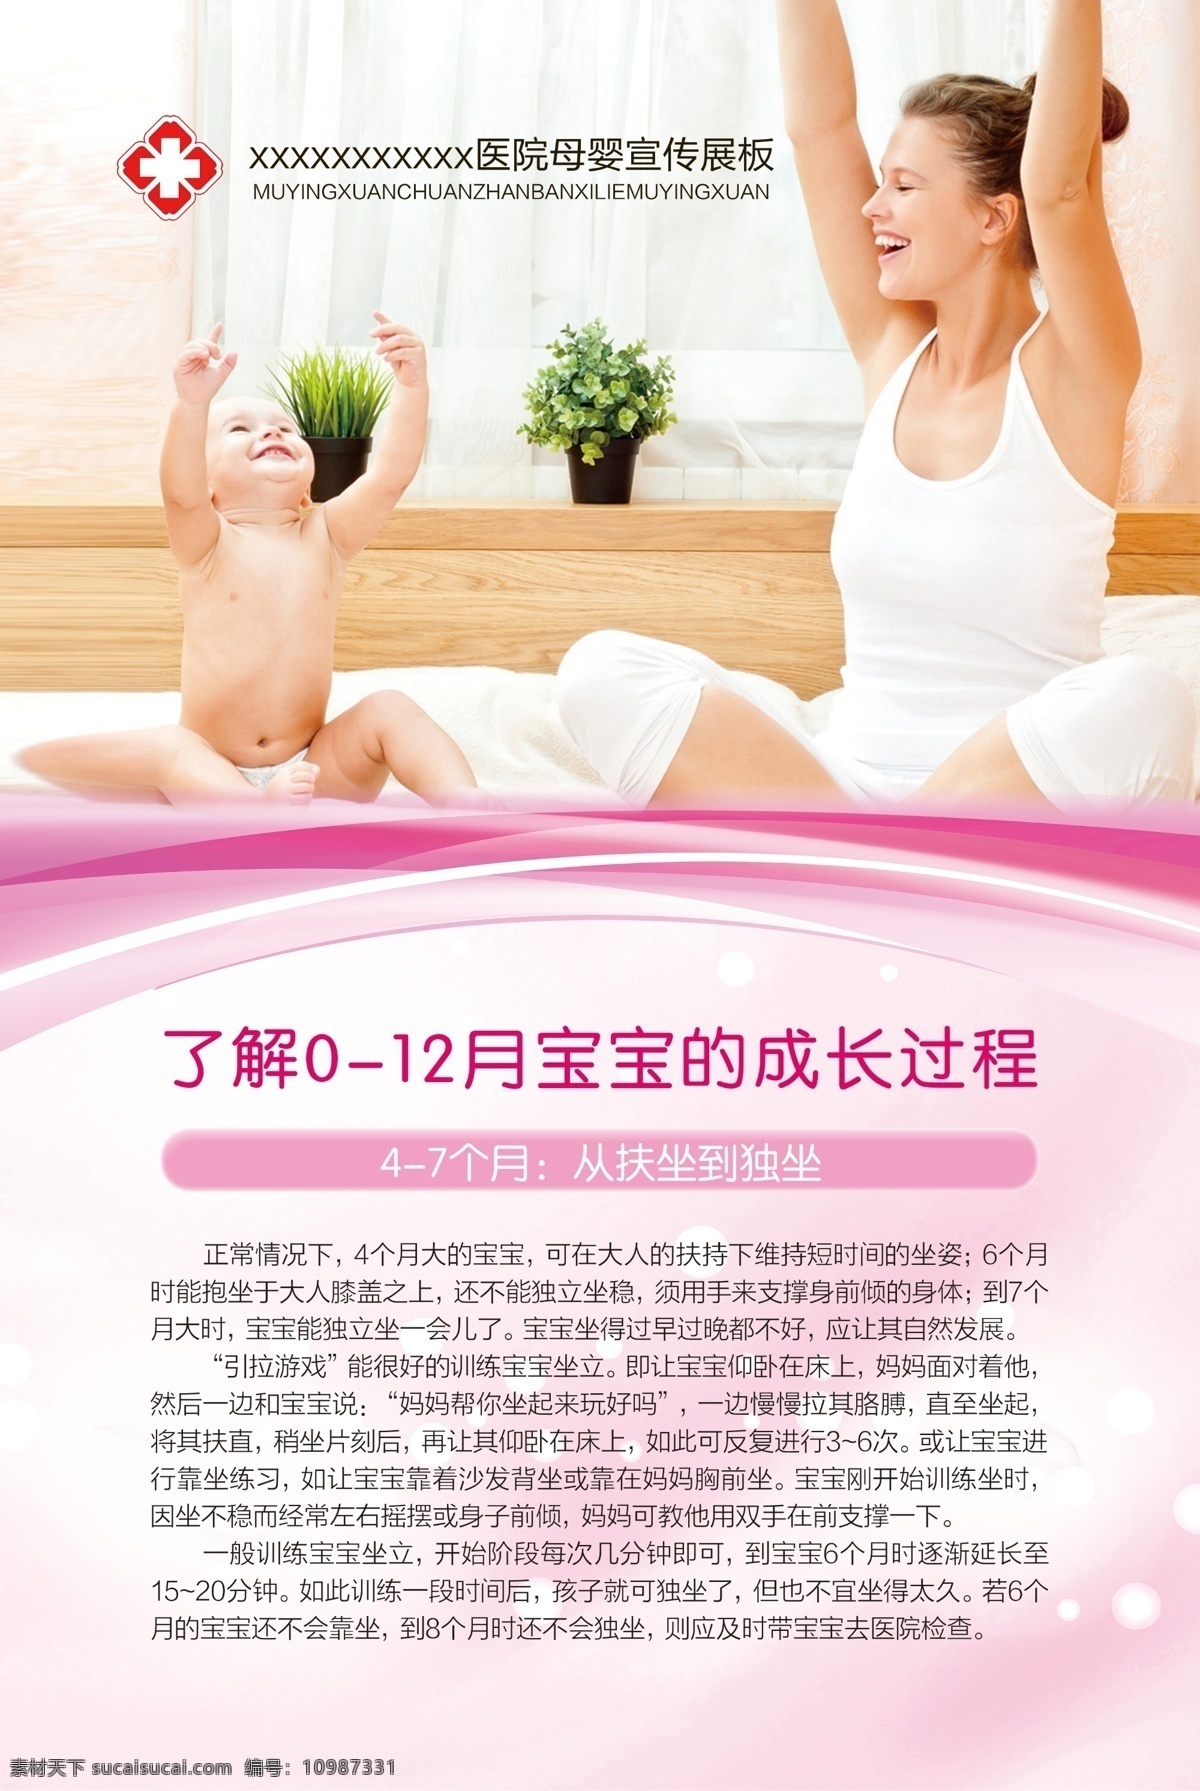 母婴宣传展板 母婴 婴儿发育 展板 医院 宝宝成长过程 dm宣传单